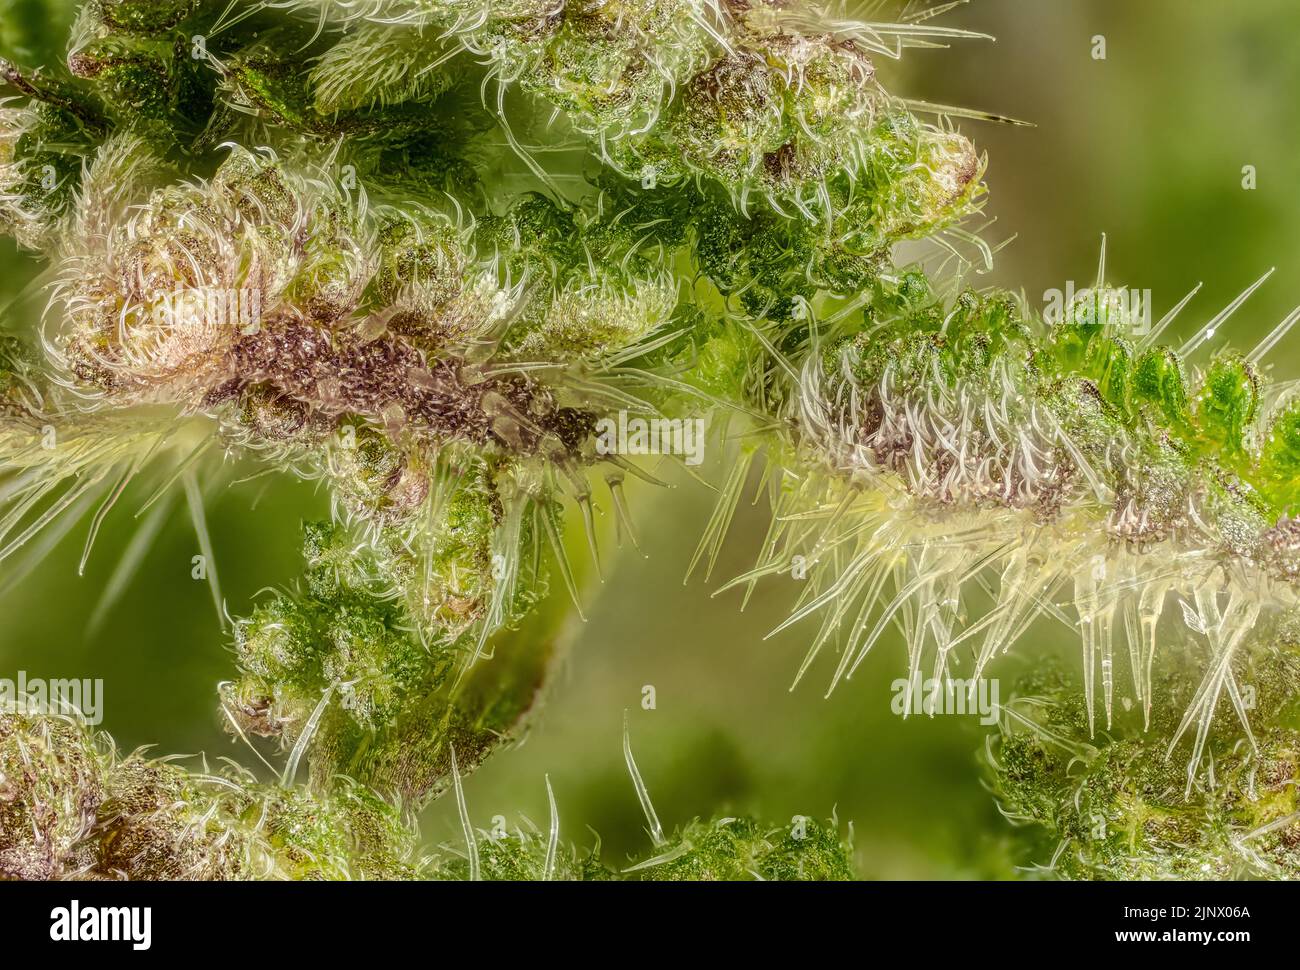 Junge Brennnessel (Urtica dioica) Pflanzenblumen, Mikroskopie Detail, transparente Stachelhaare genannt Trichome sichtbar, Bildbreite 9mm Stockfoto